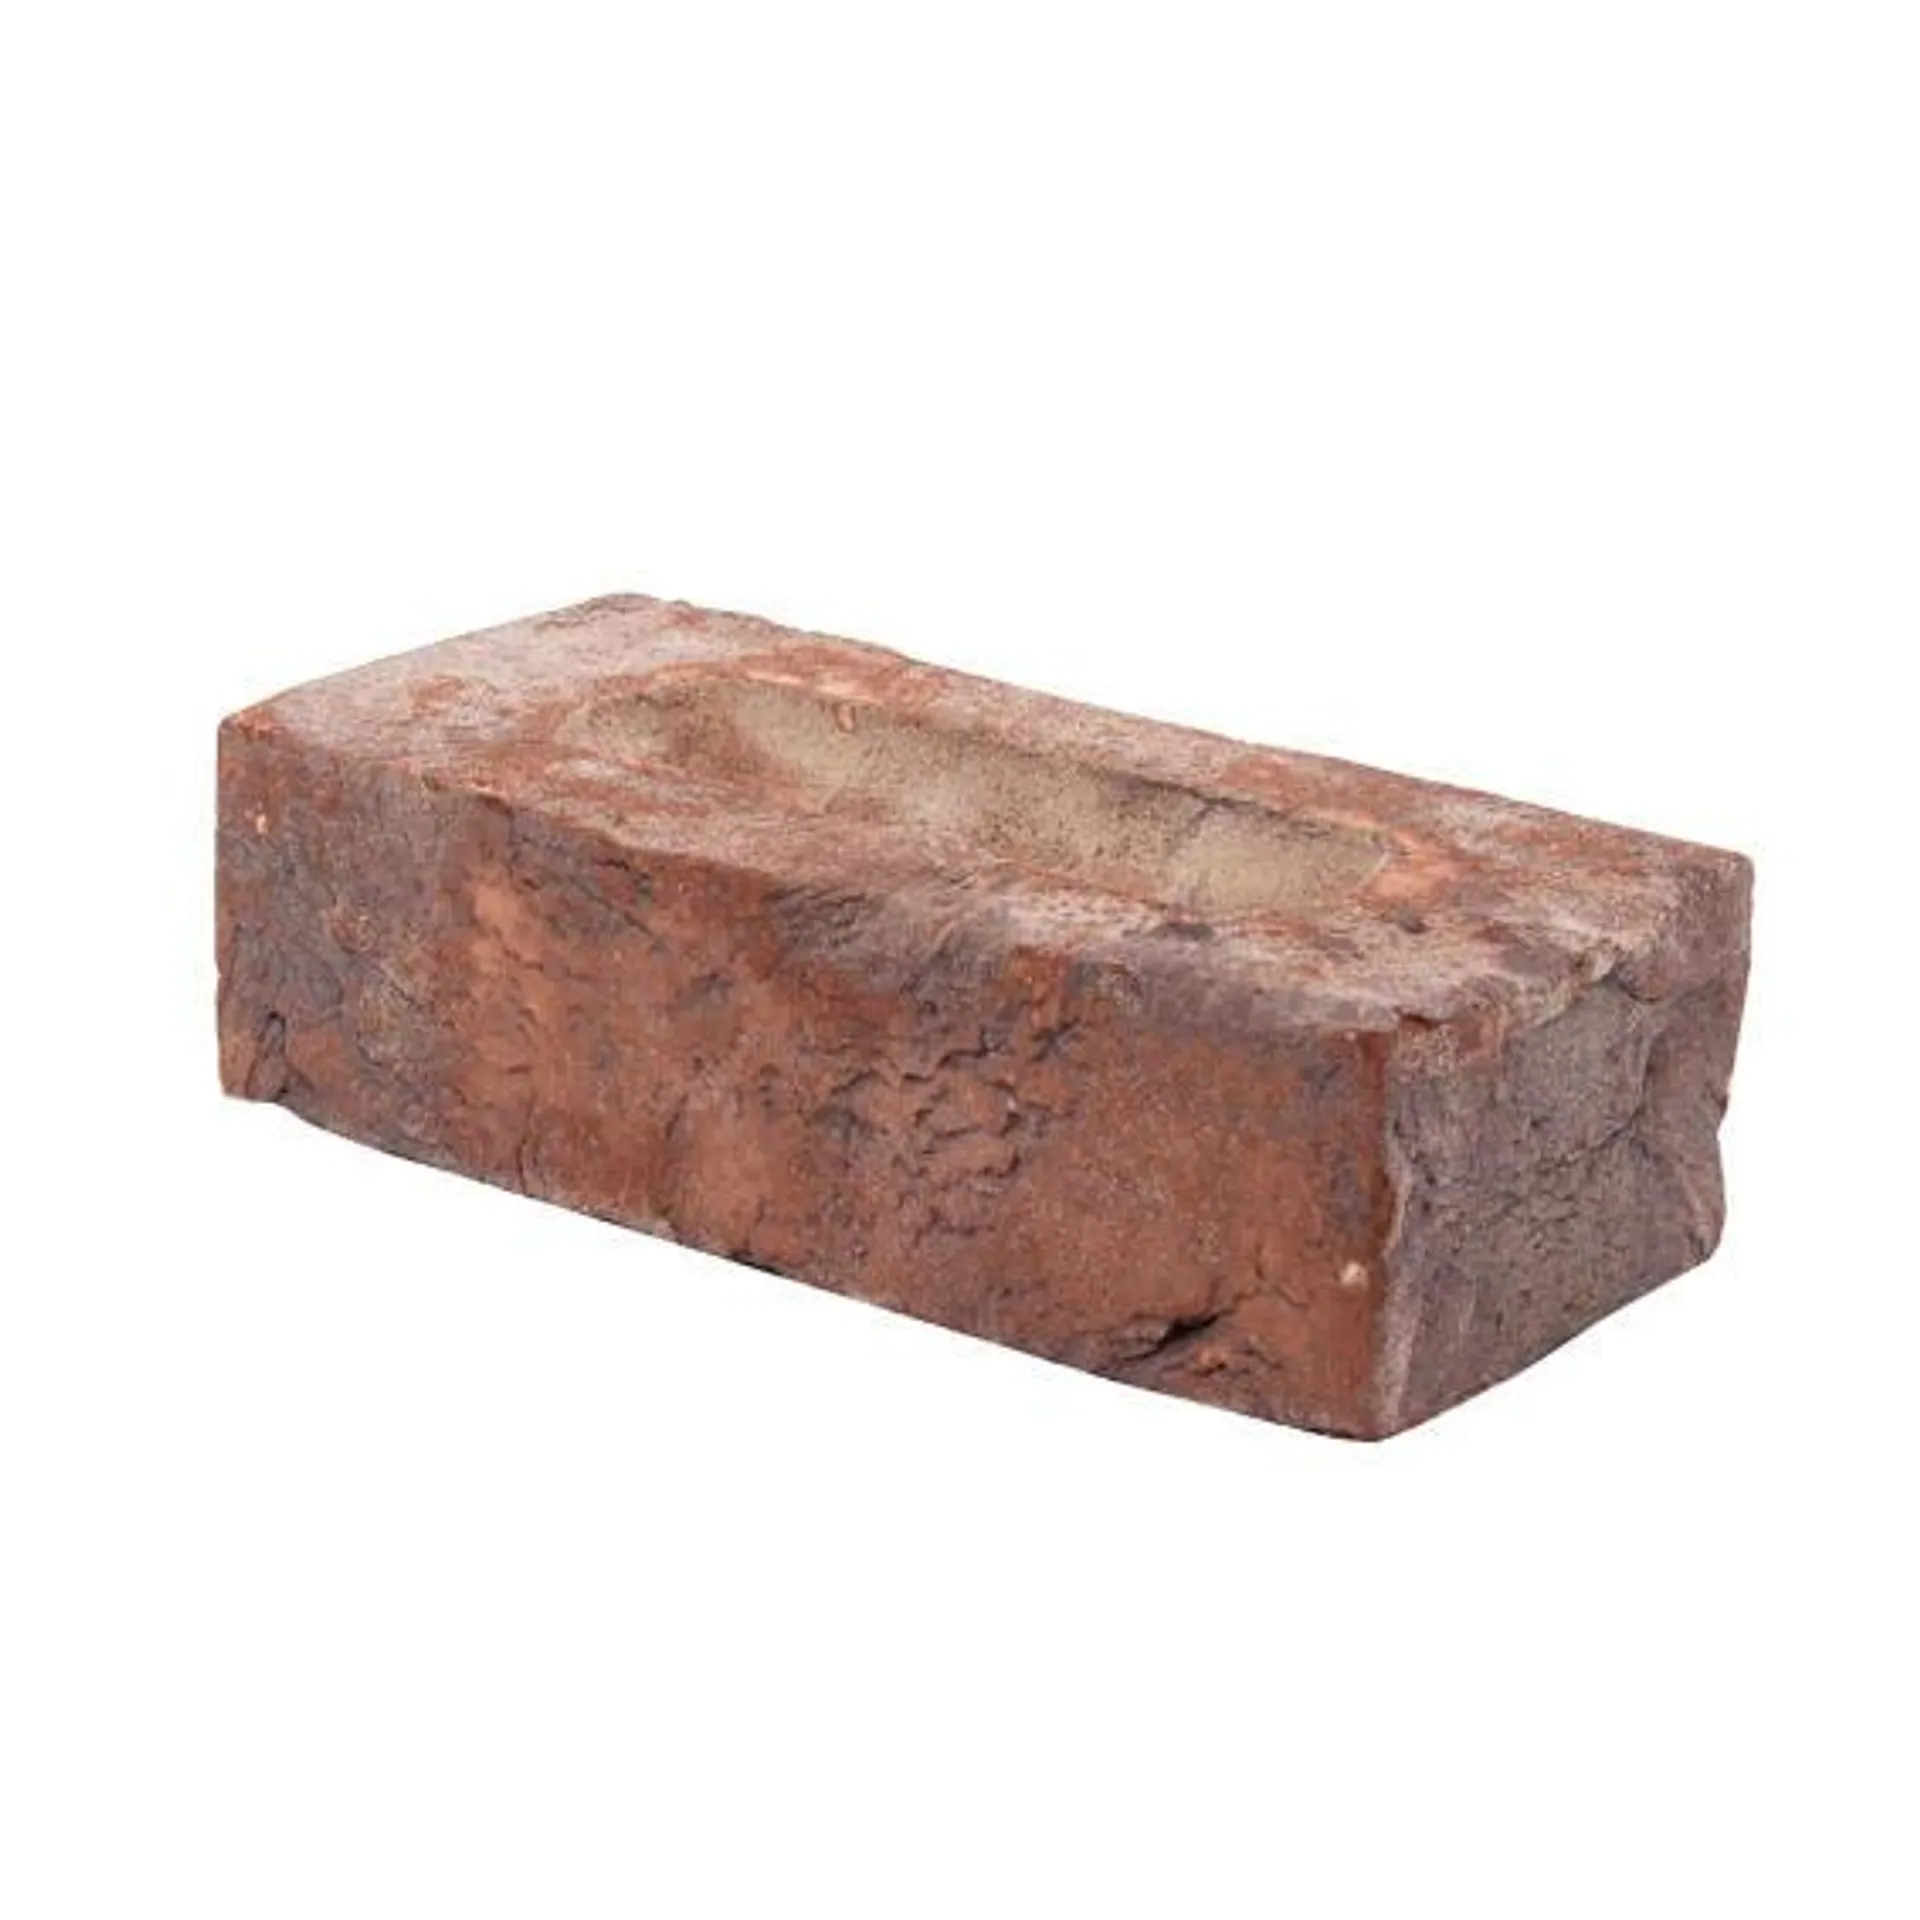 Brick Clay Stock